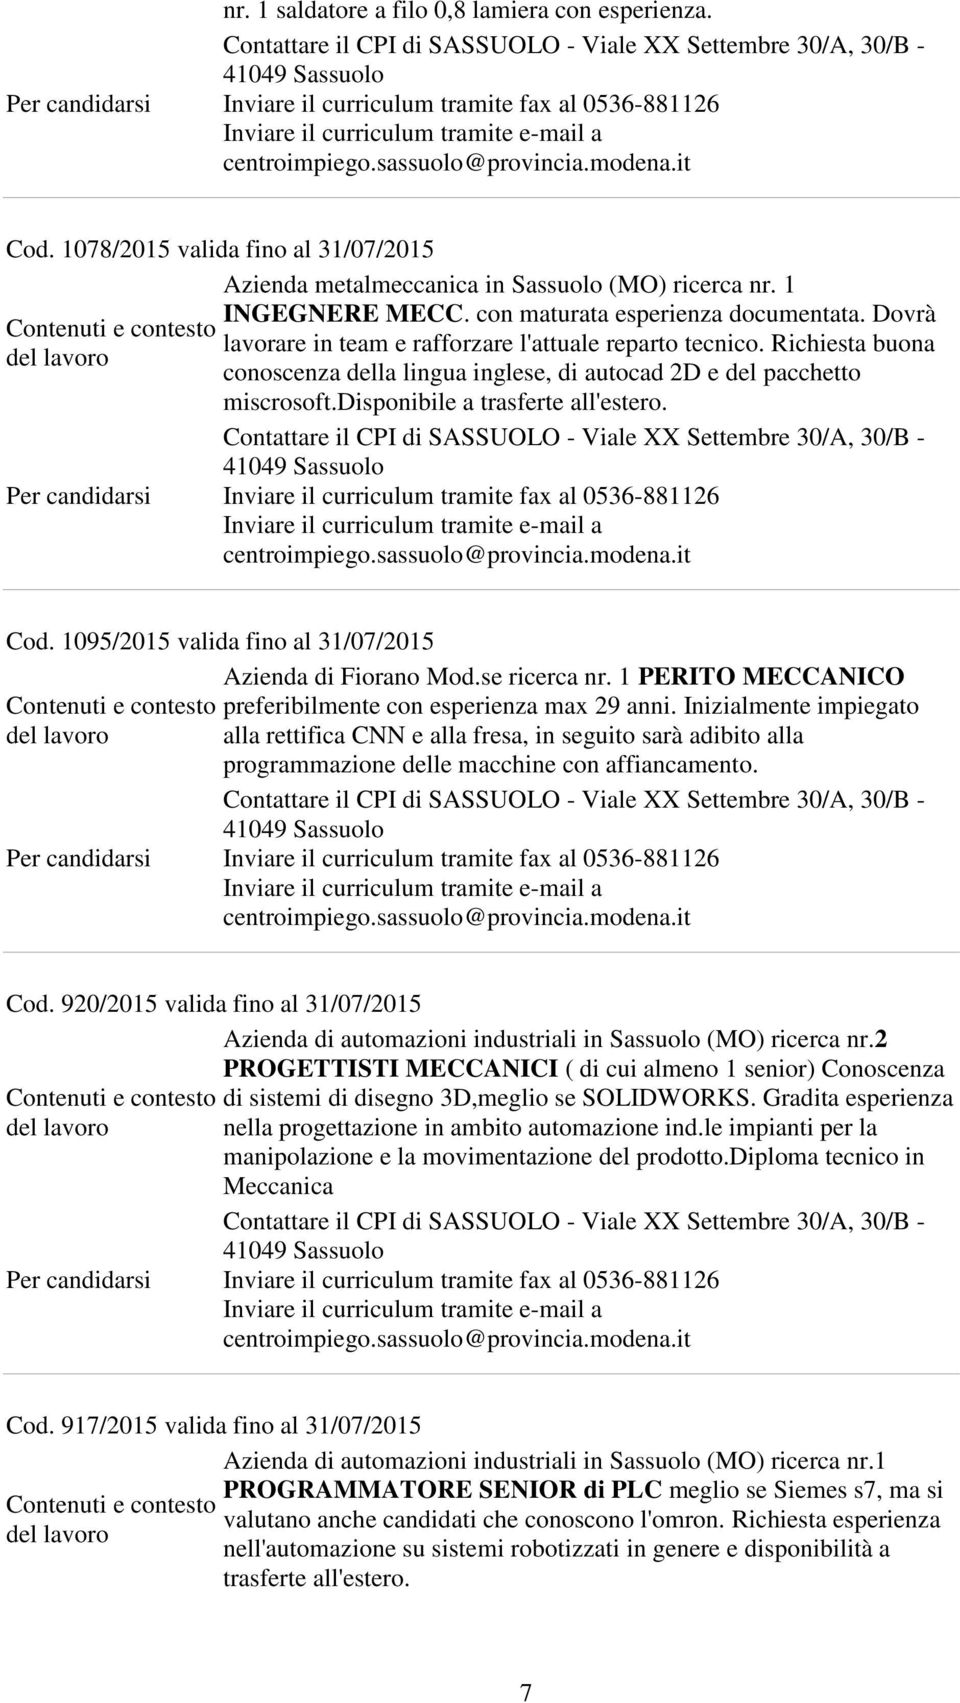 1095/2015 valida fino al 31/07/2015 Azienda di Fiorano Mod.se ricerca nr. 1 PERITO MECCANICO preferibilmente con esperienza max 29 anni.